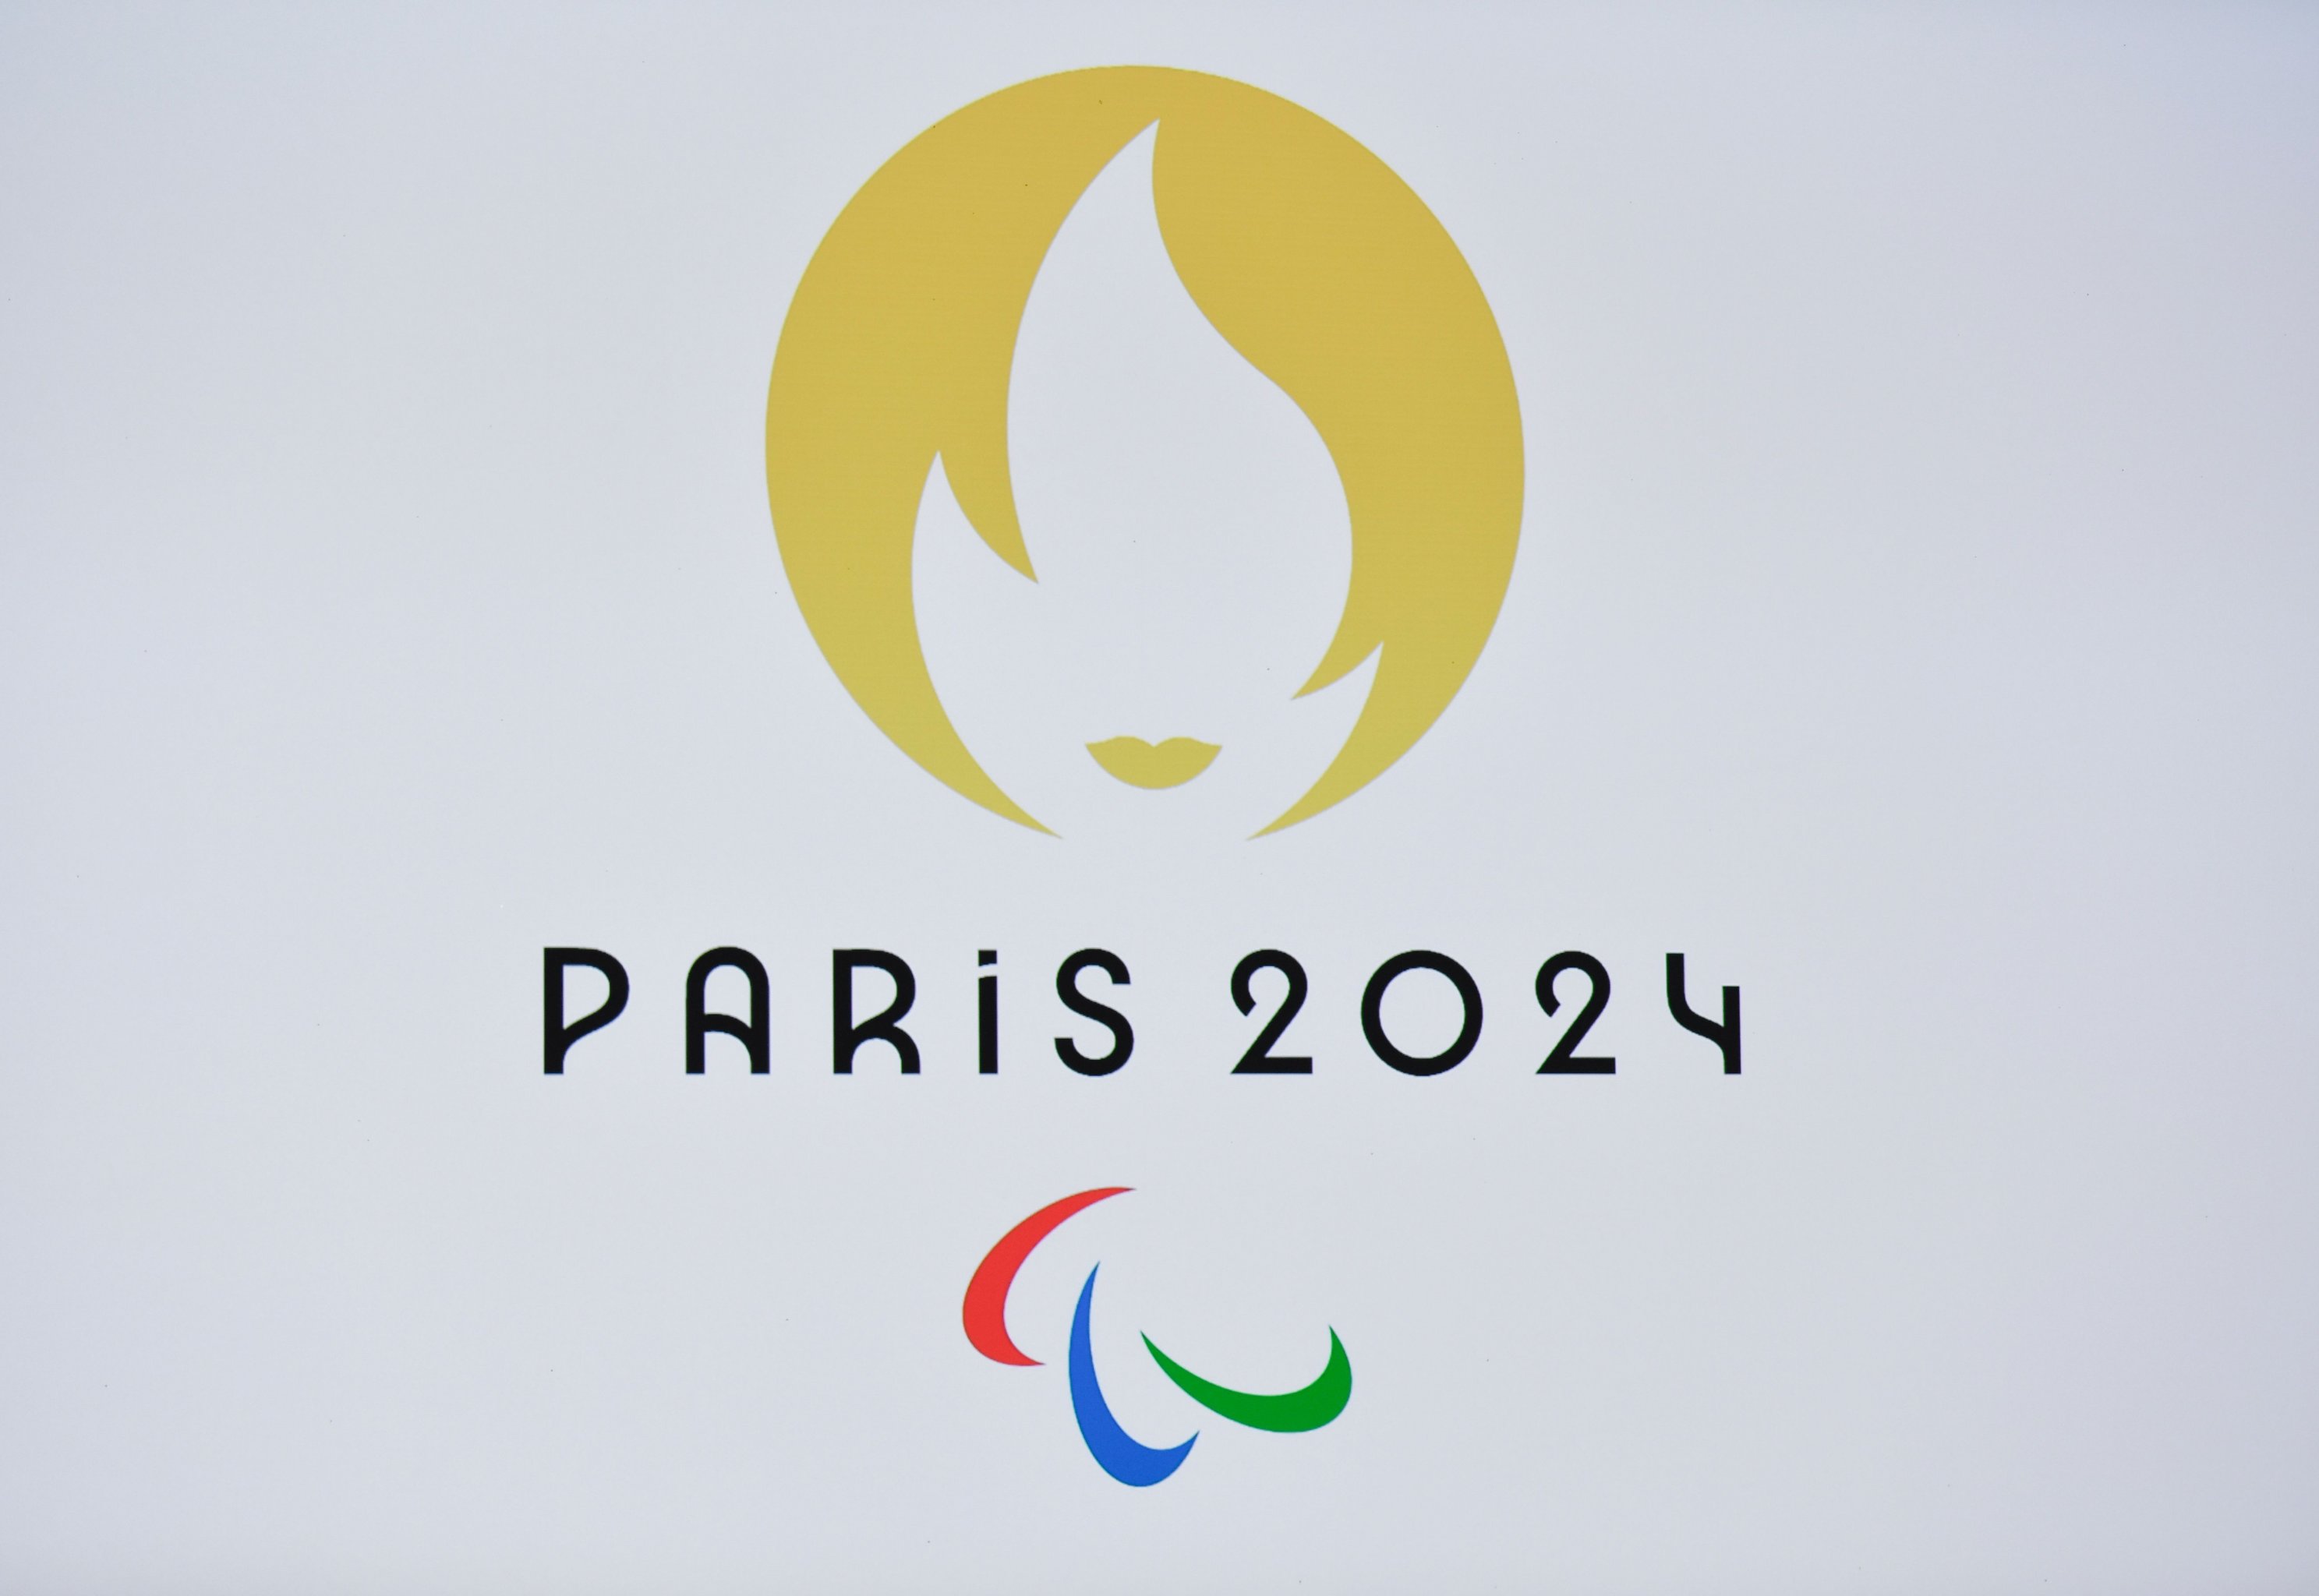 2024 olympics location